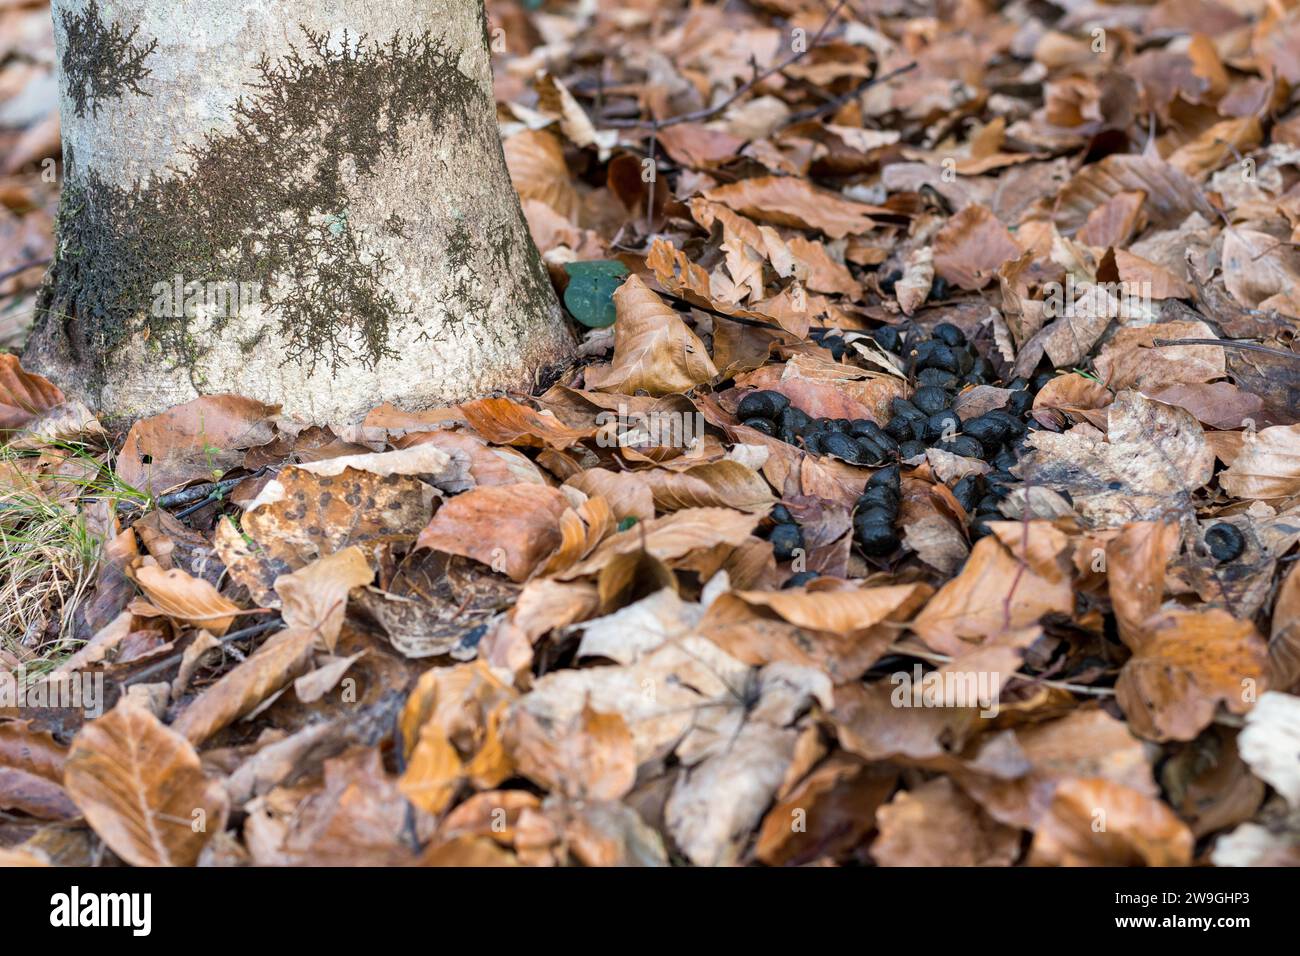 Reh-Kot in einem Italienwald auf einem Hintergrund mit trockenen Blättern. Frischdünger von Europäischem Reh-Cervine (Capreolus capreolus) im Grünwald. Stockfoto